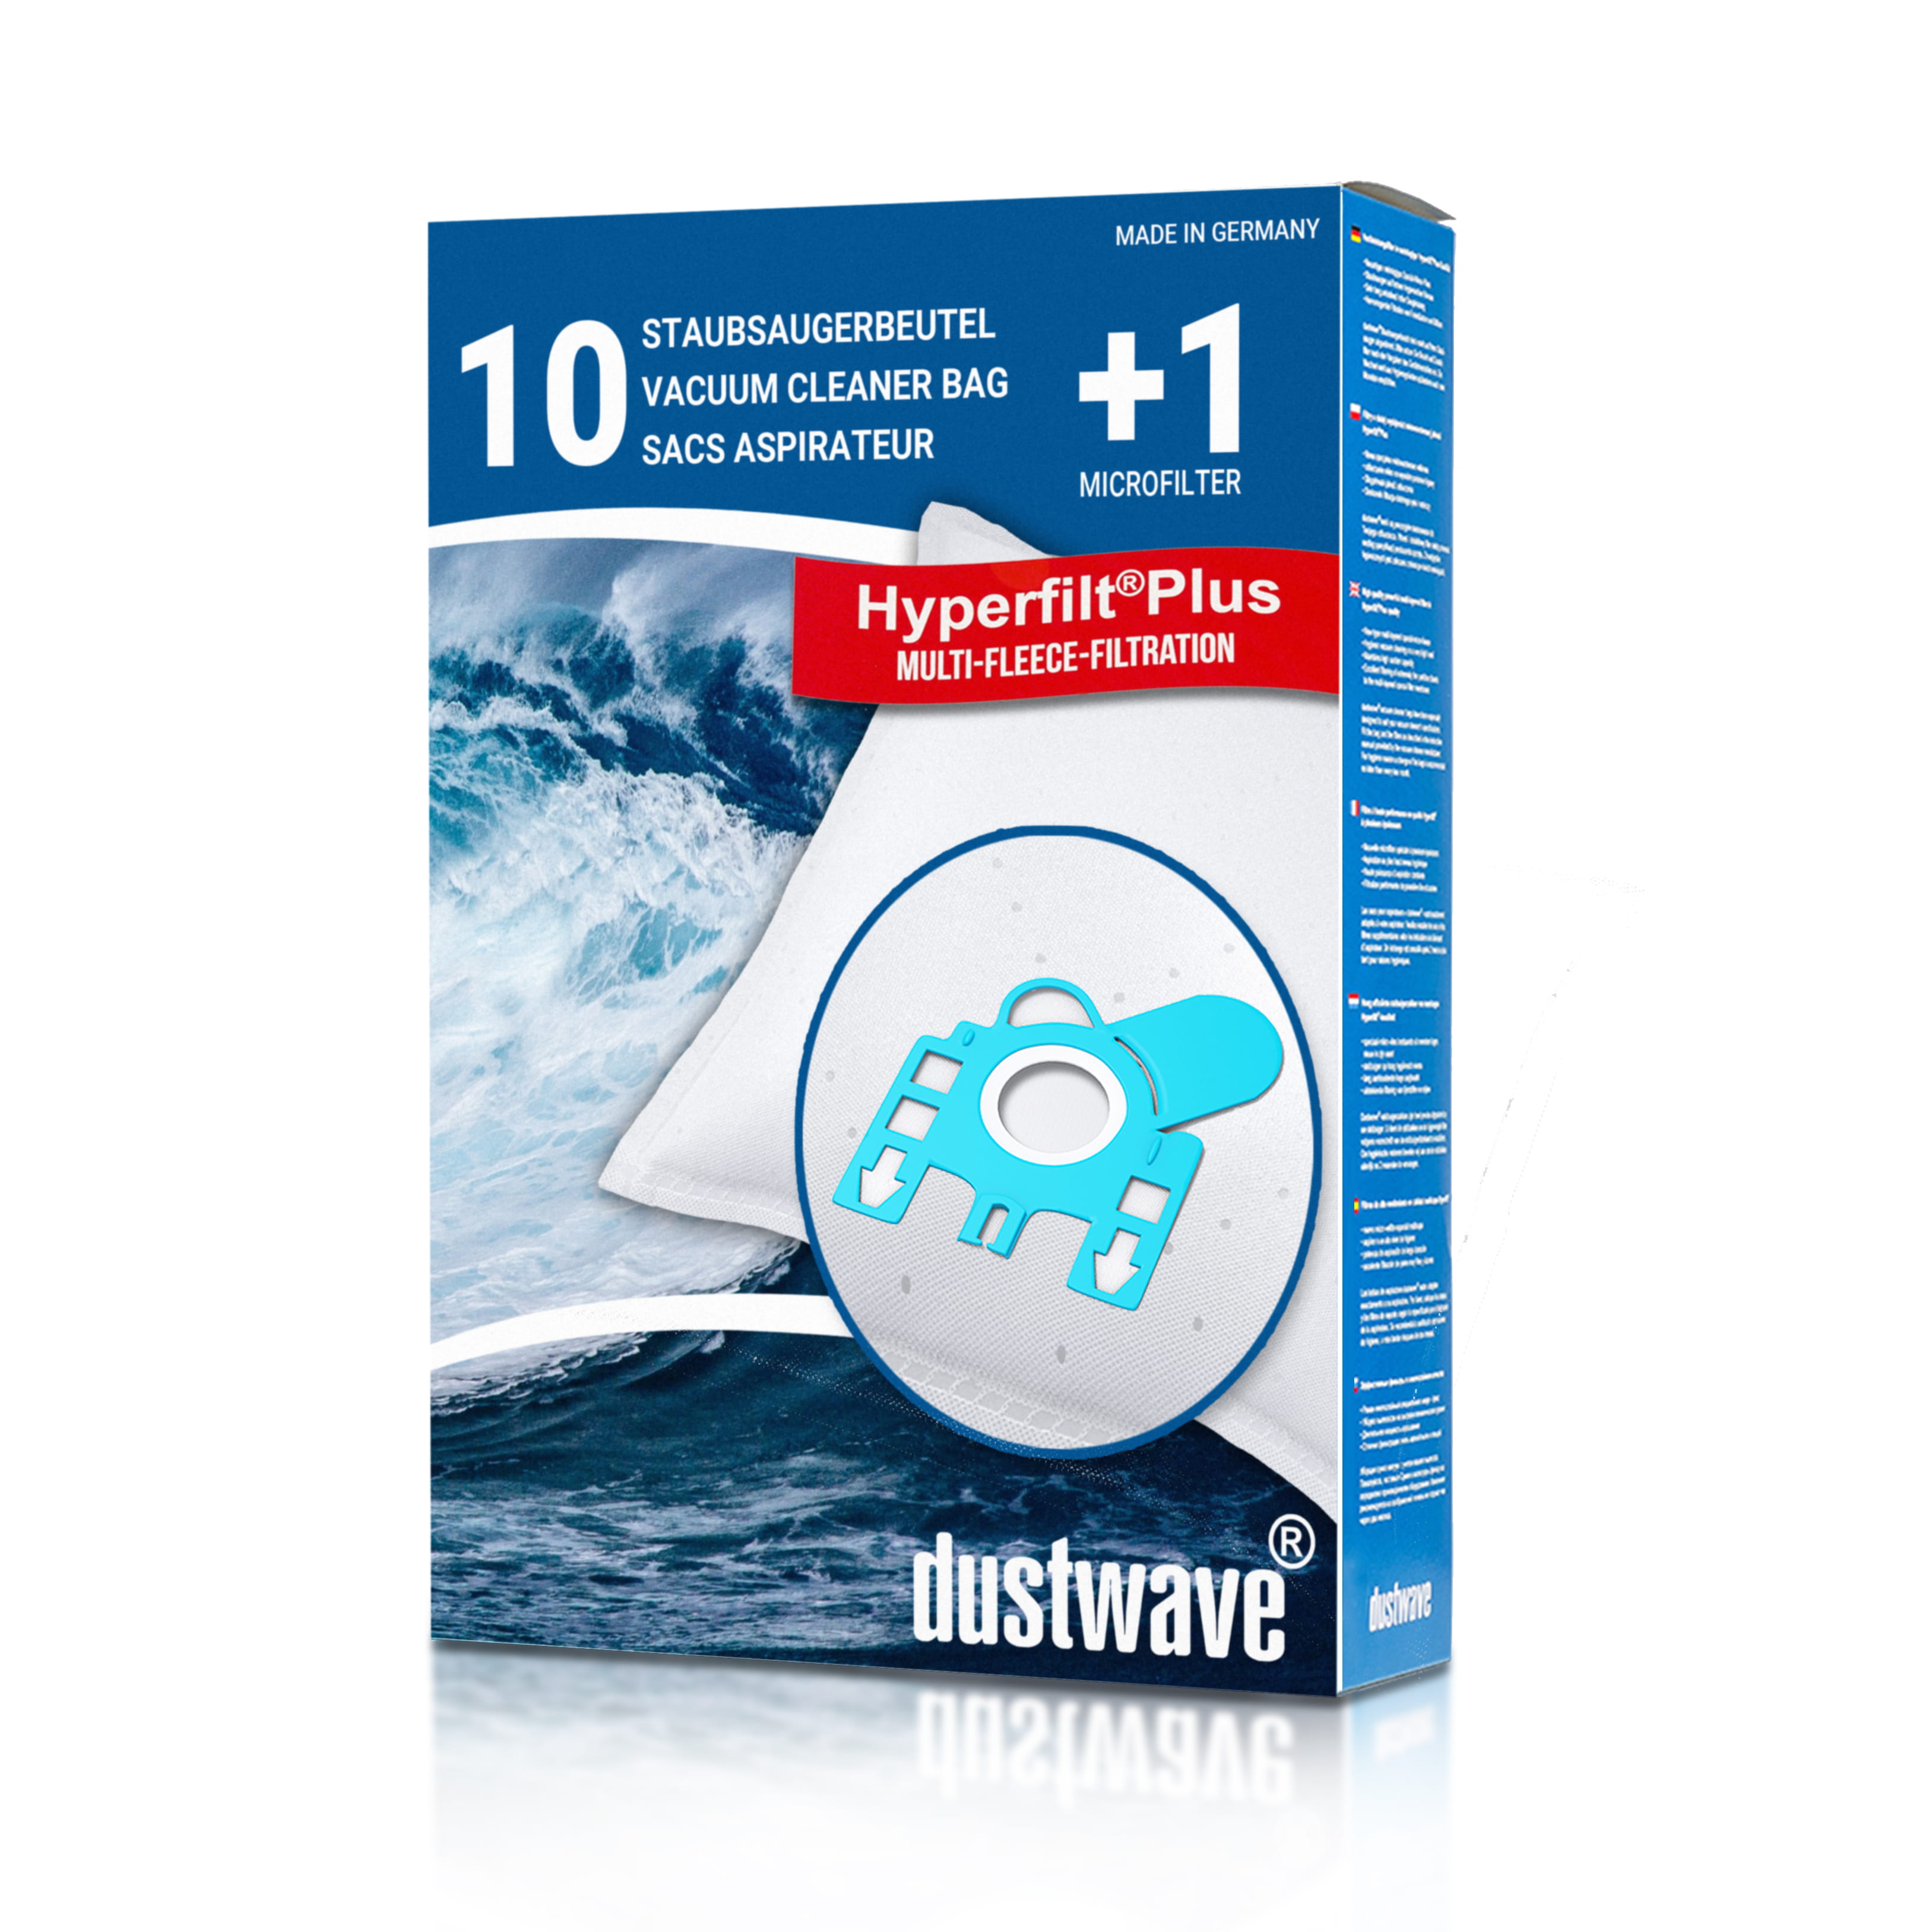 Dustwave® 10 Staubsaugerbeutel für Hoover TX330T01 / TRTX330T01 - hocheffizient, mehrlagiges Mikrovlies mit Hygieneverschluss - Made in Germany